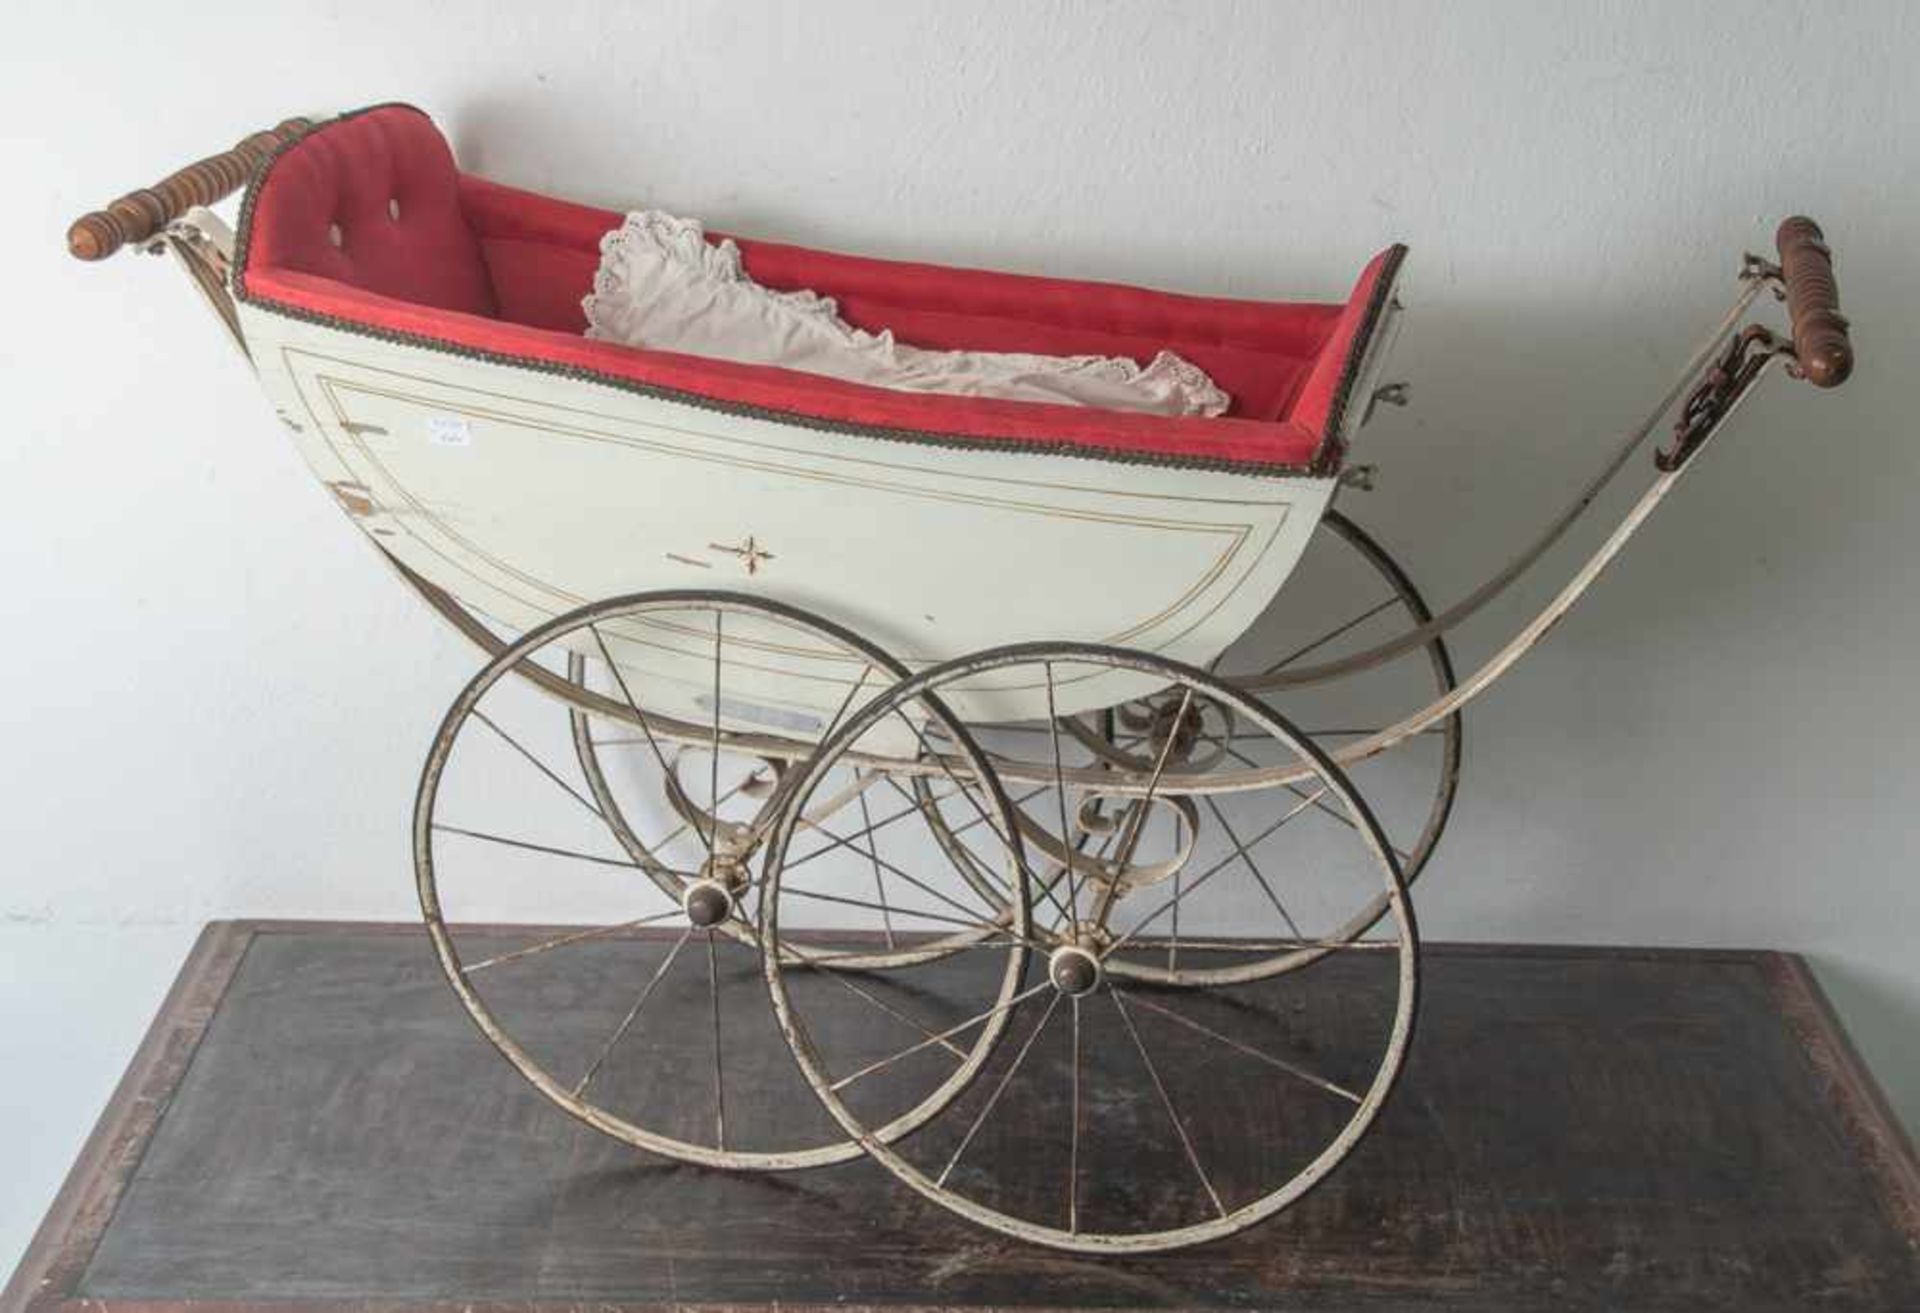 Puppenwagen, Ende 19. Jahrhundert, Holz/Metall, weiß lackiert, vierrädrig mit Speichen. Ohne